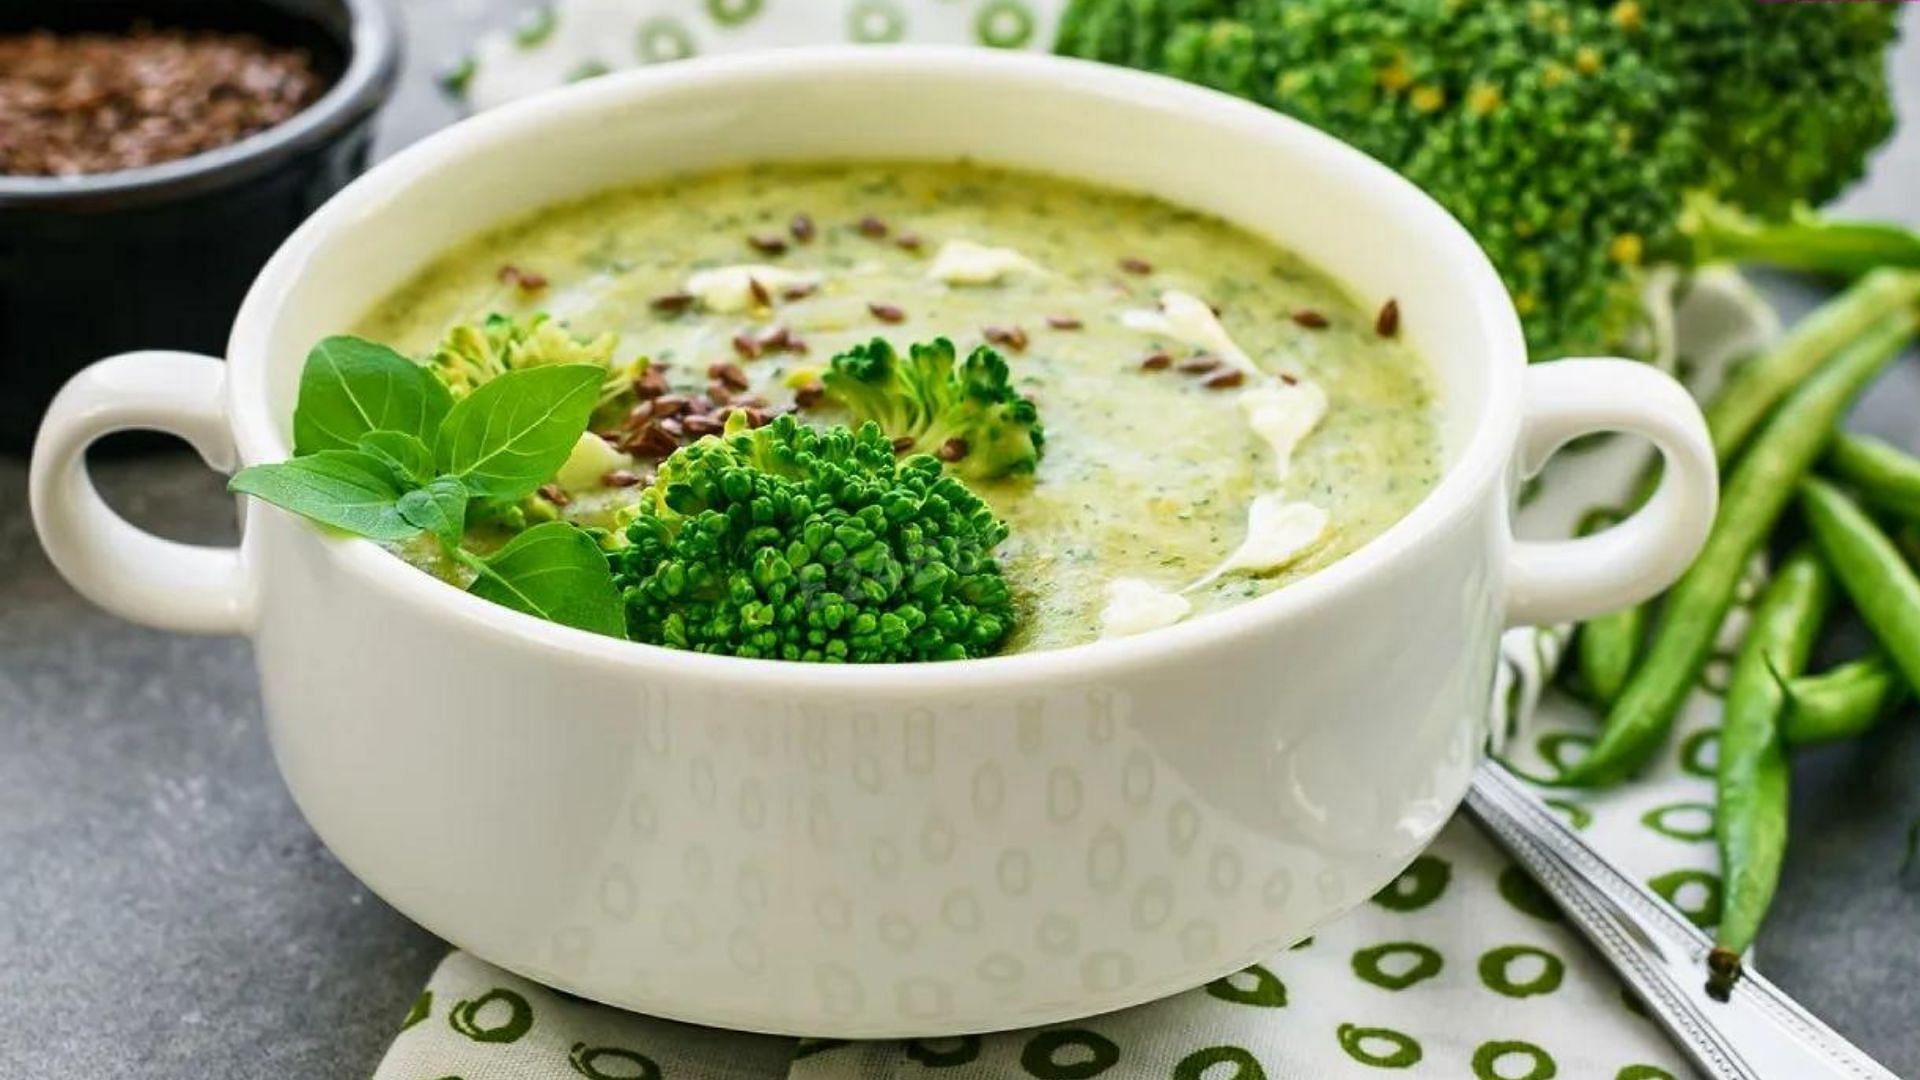 हरा सूप  विटामिन और खनिजों का खजाना है। 